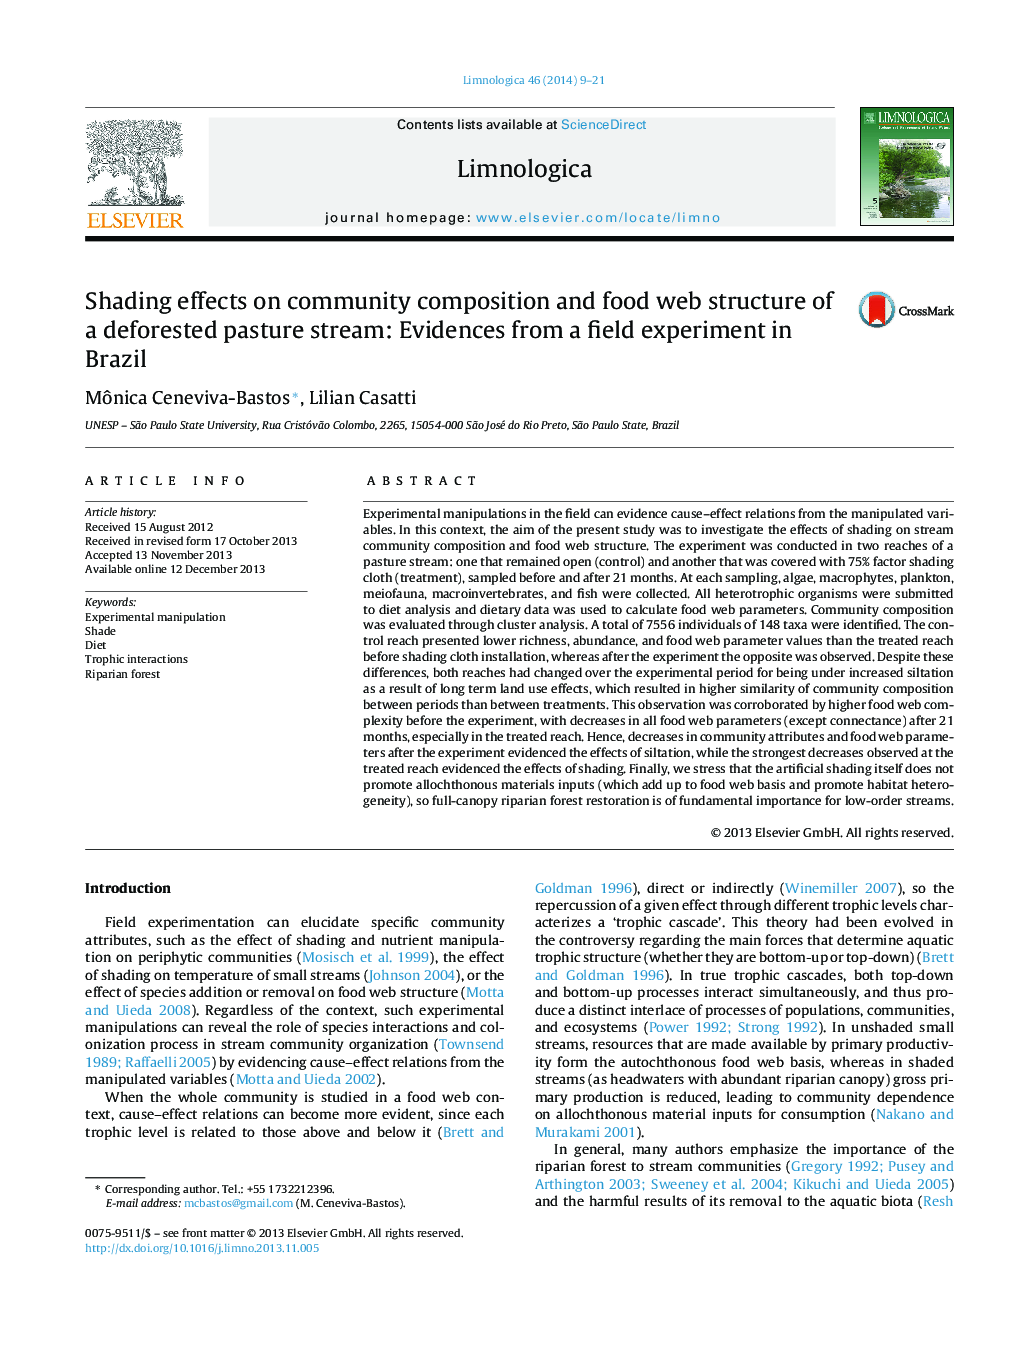 اثرات سایه دار بر ترکیب جامعه و ساختار وب غذای یک جریان انبار شده جنگل: شواهدی از یک آزمایش میدانی در برزیل 